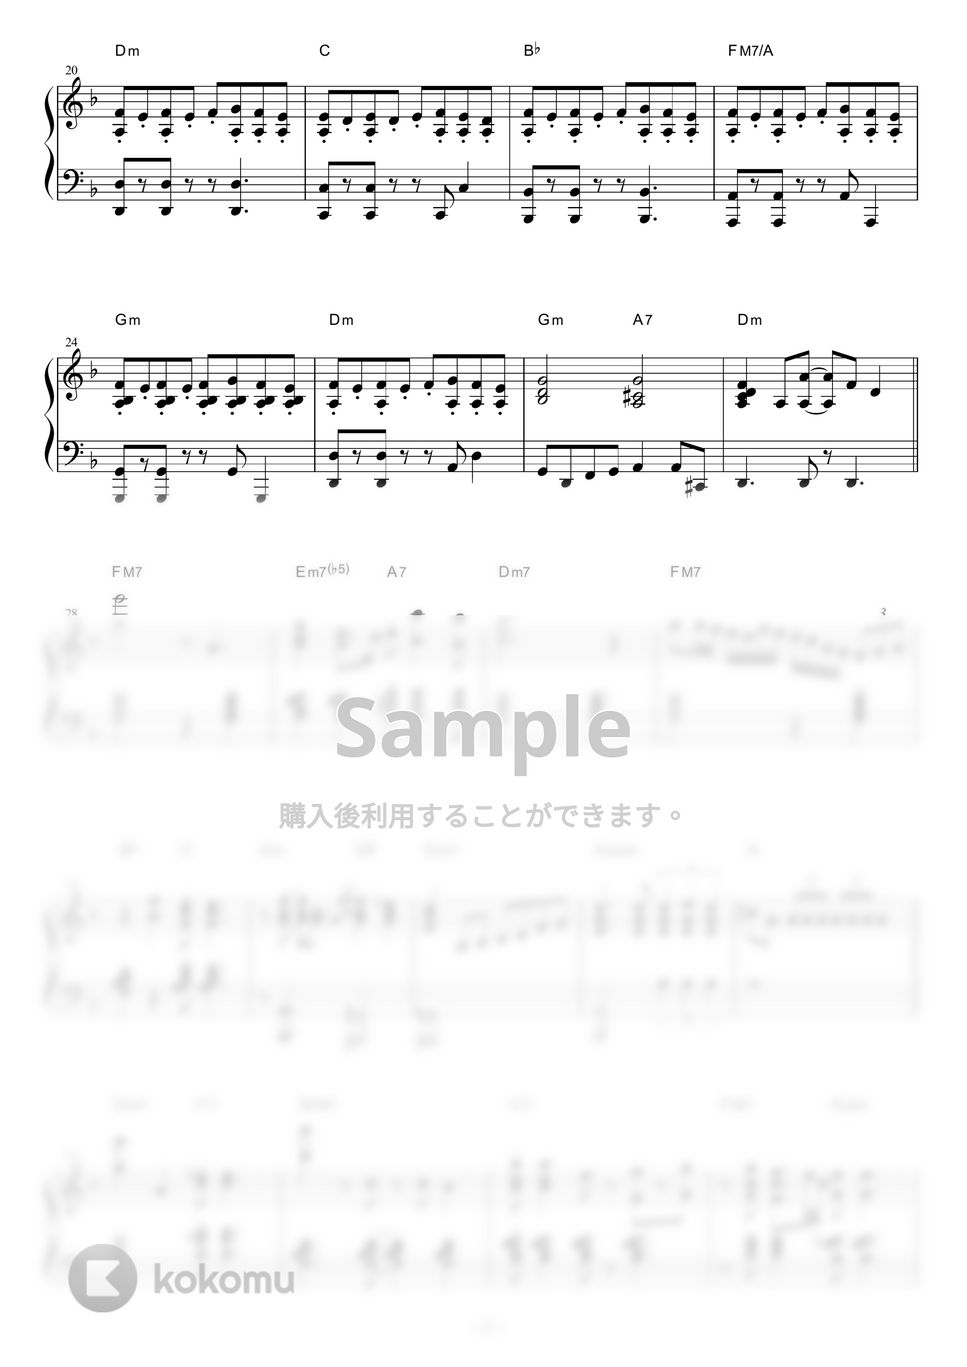 久石譲 - 君をのせて (Jazz ver.) by piano*score